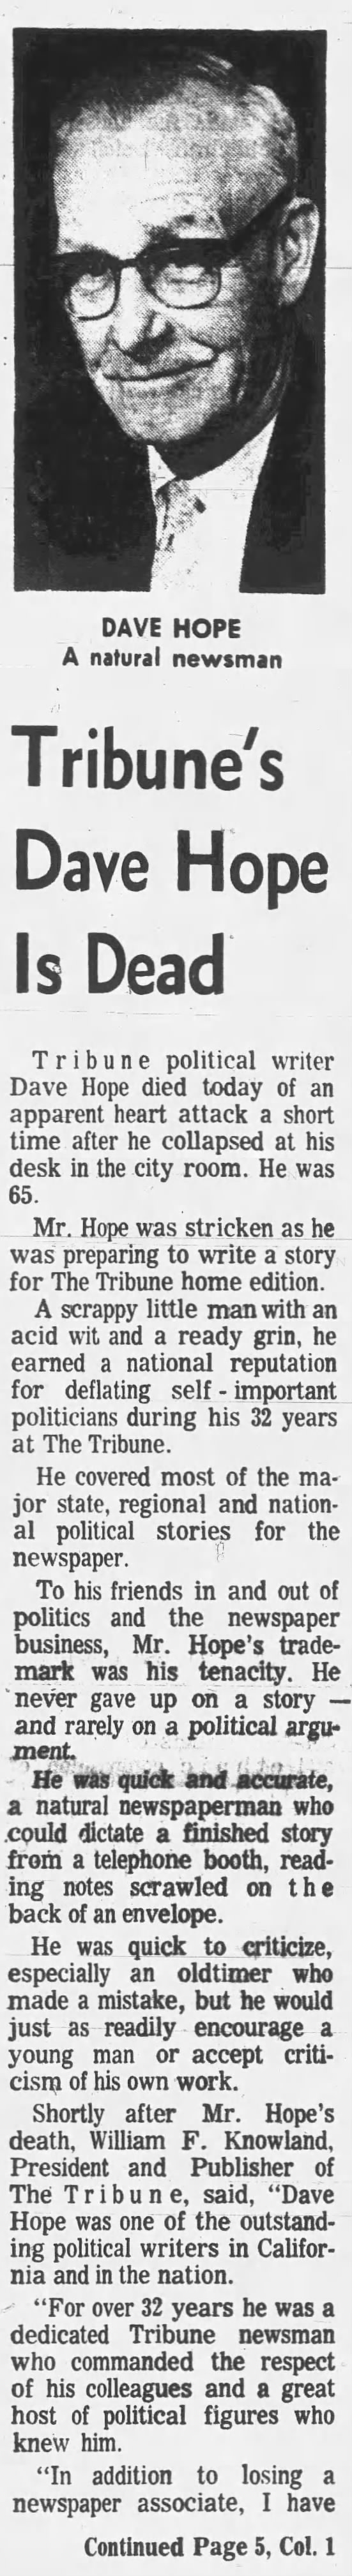 Tribune's Dave Hope Is Dead, part 1